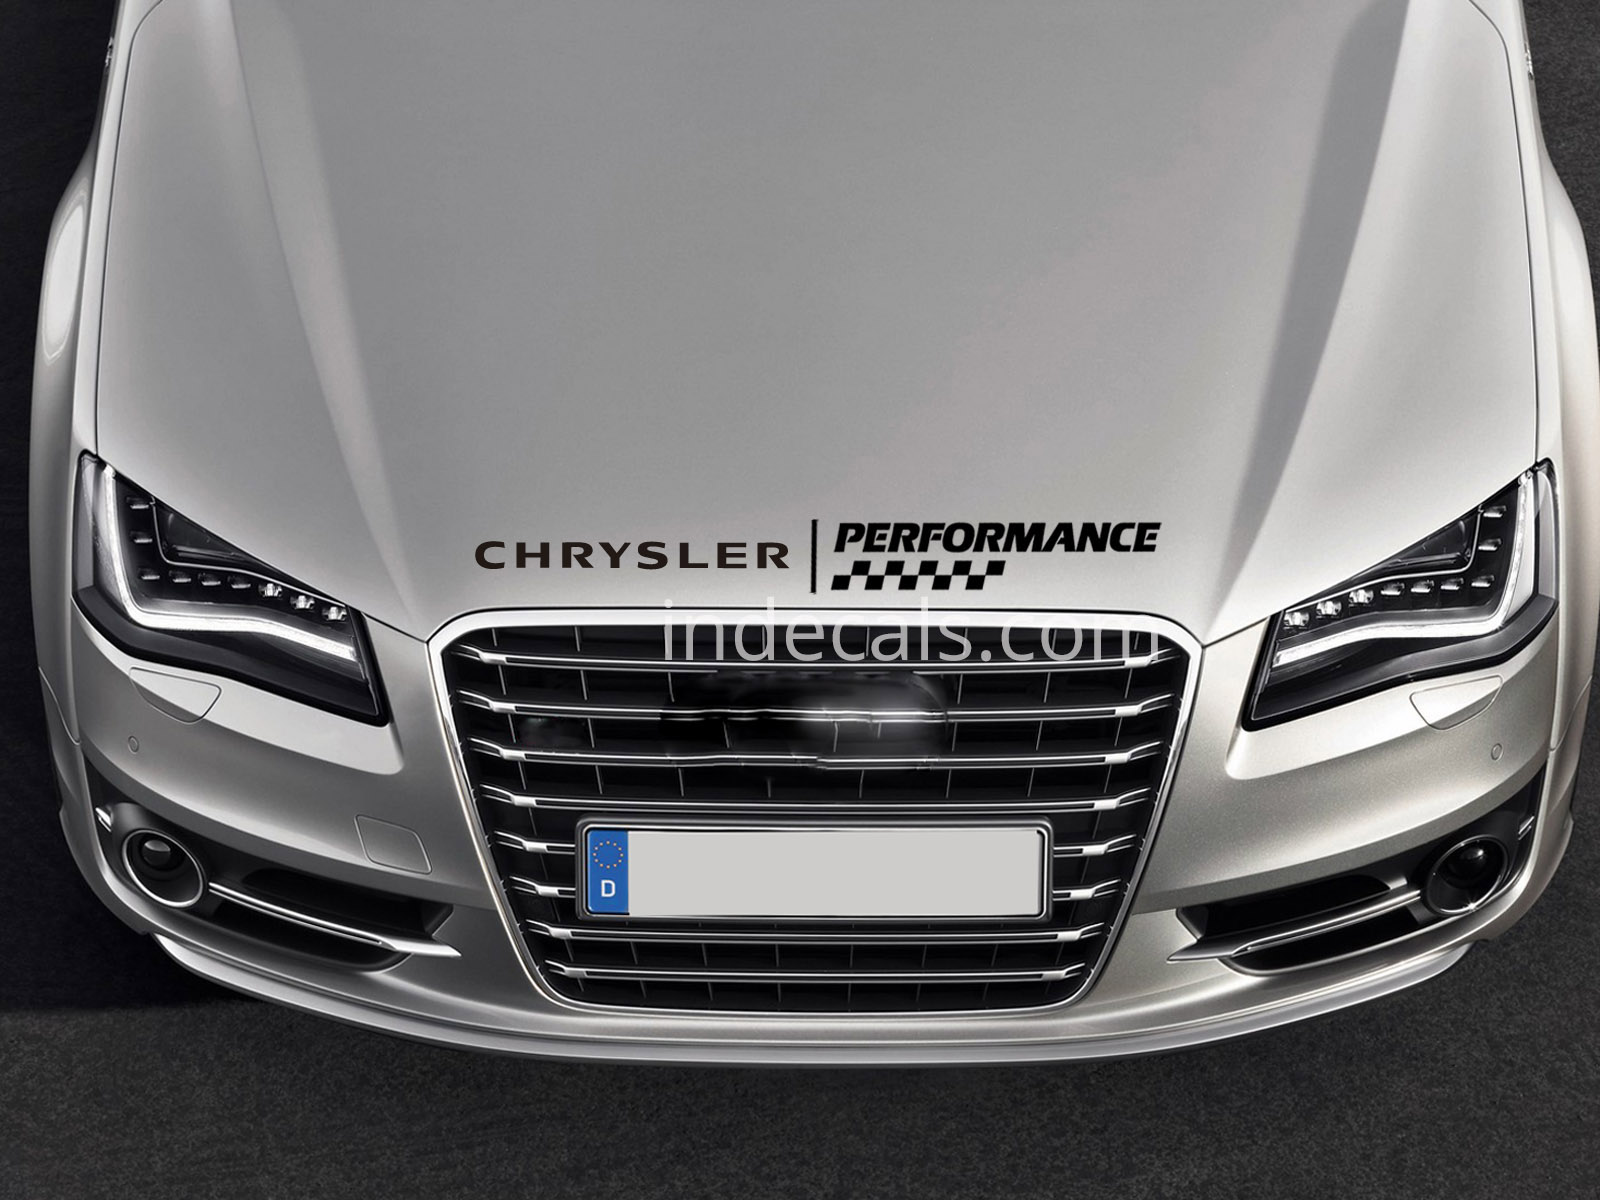 1 x Chrysler Performance Sticker for Bonnet - Black